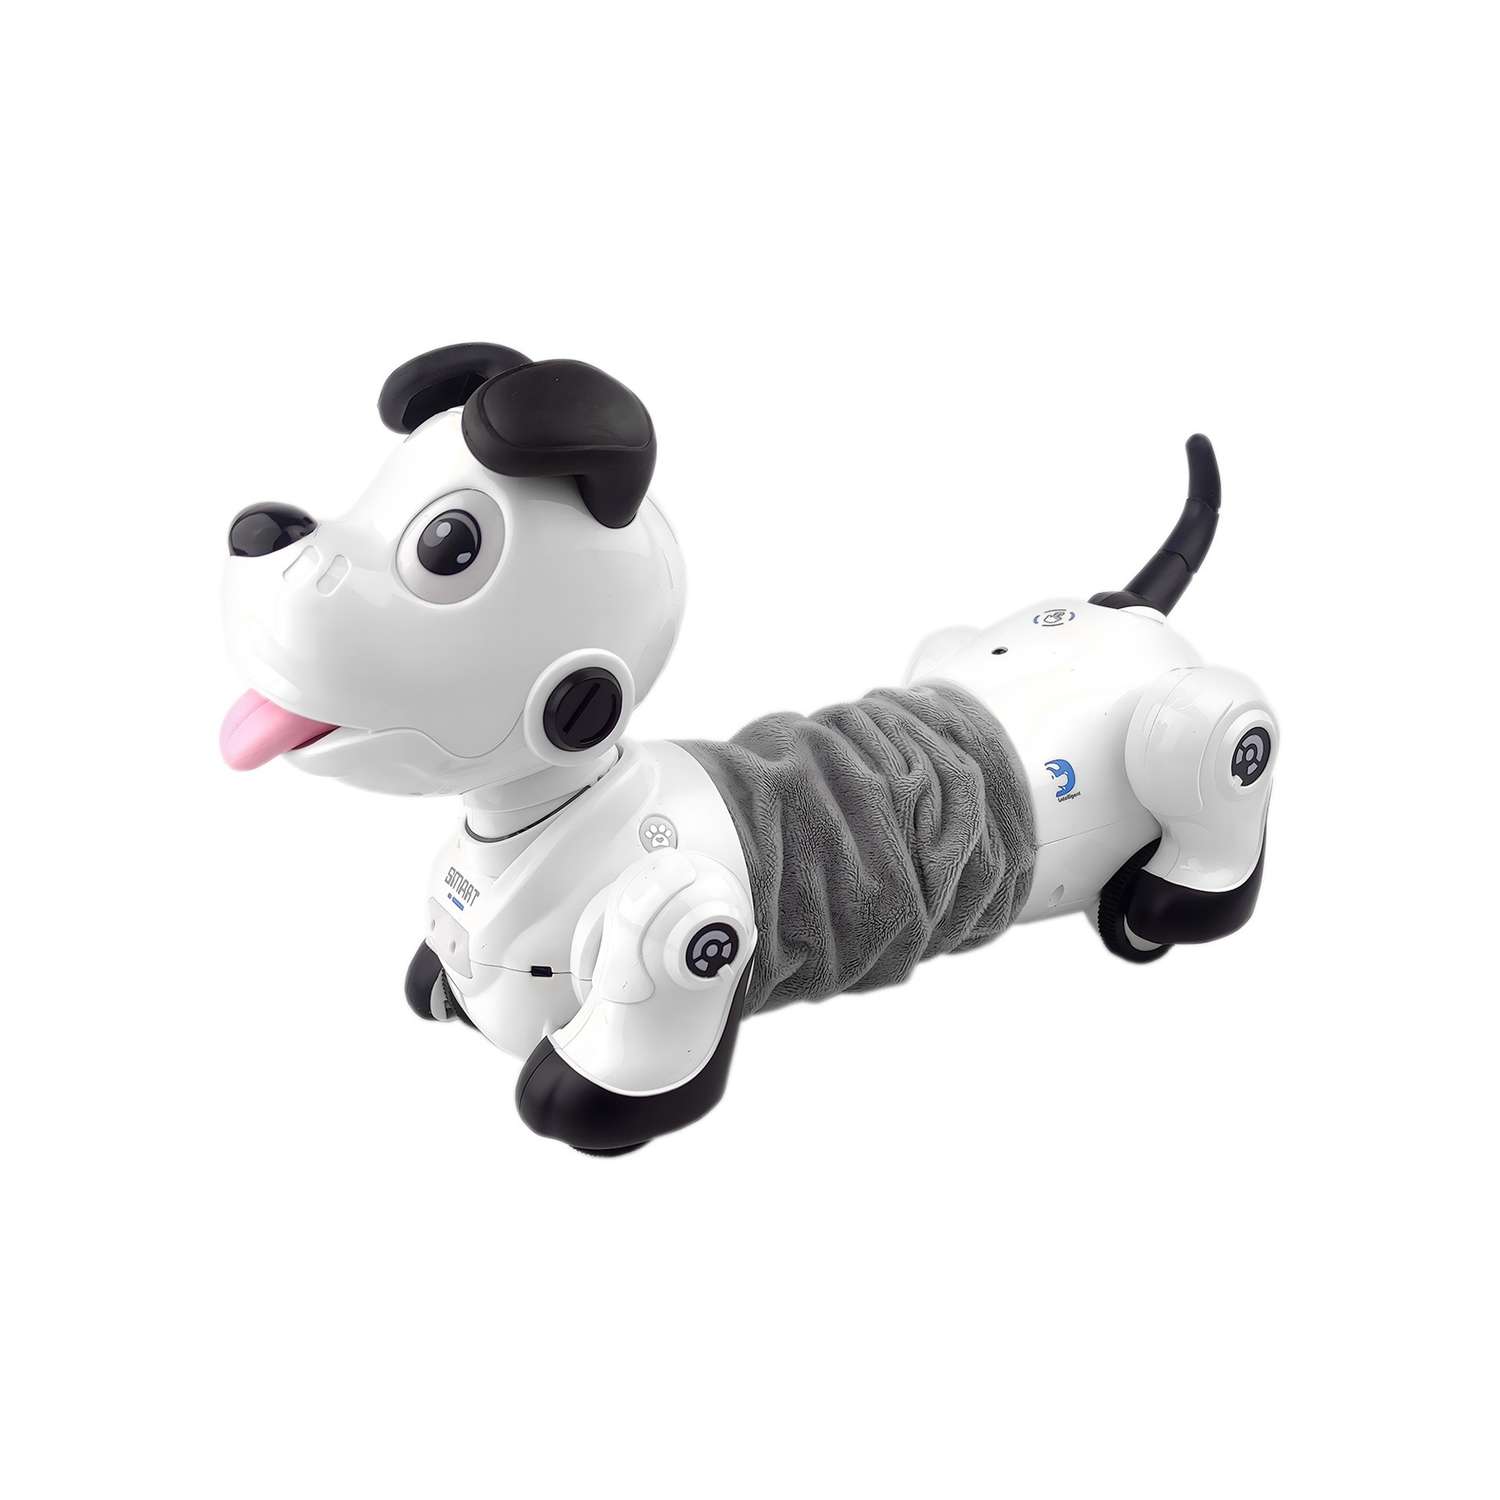 Радиоуправляемая робот-собака Happy Cow Smart Dachshund 2.4G - фото 2